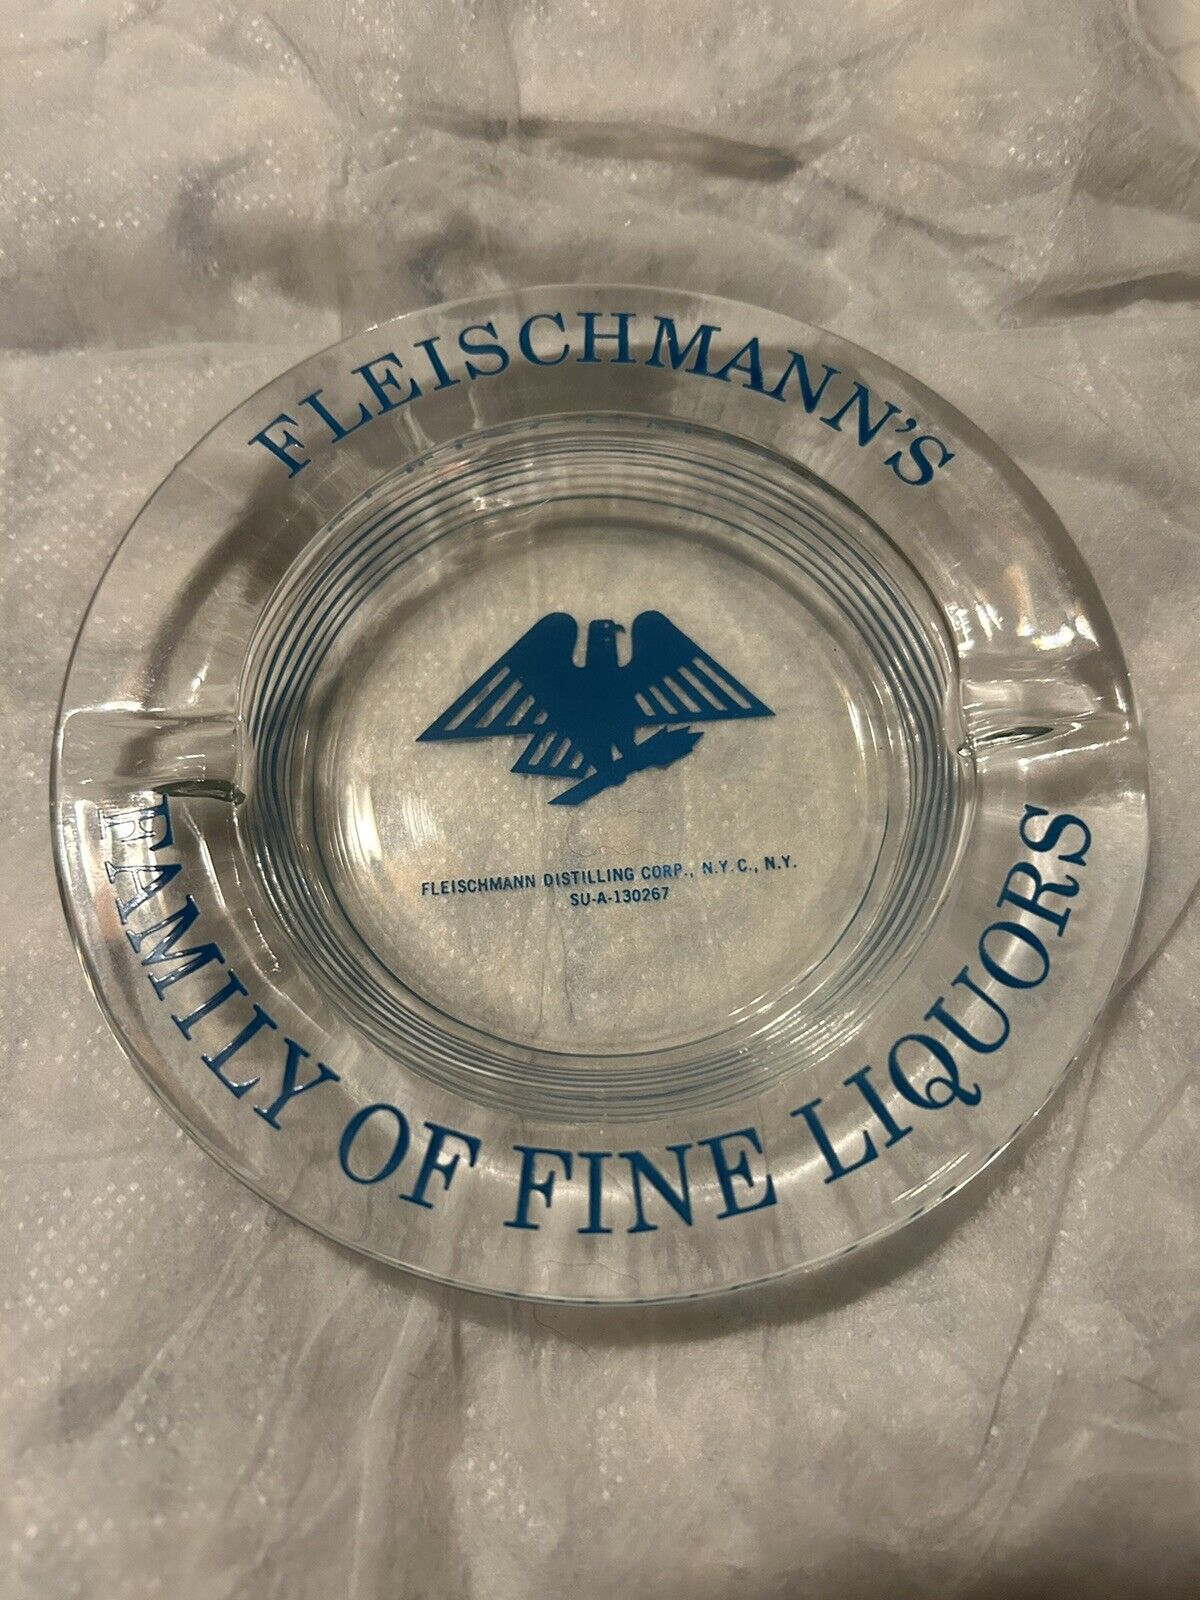 FLEISCHMANN’S  FINE LIQUORS VINTAGE NYC ART DECO ROUND GLASS ASHTRAY CIRCA 1945